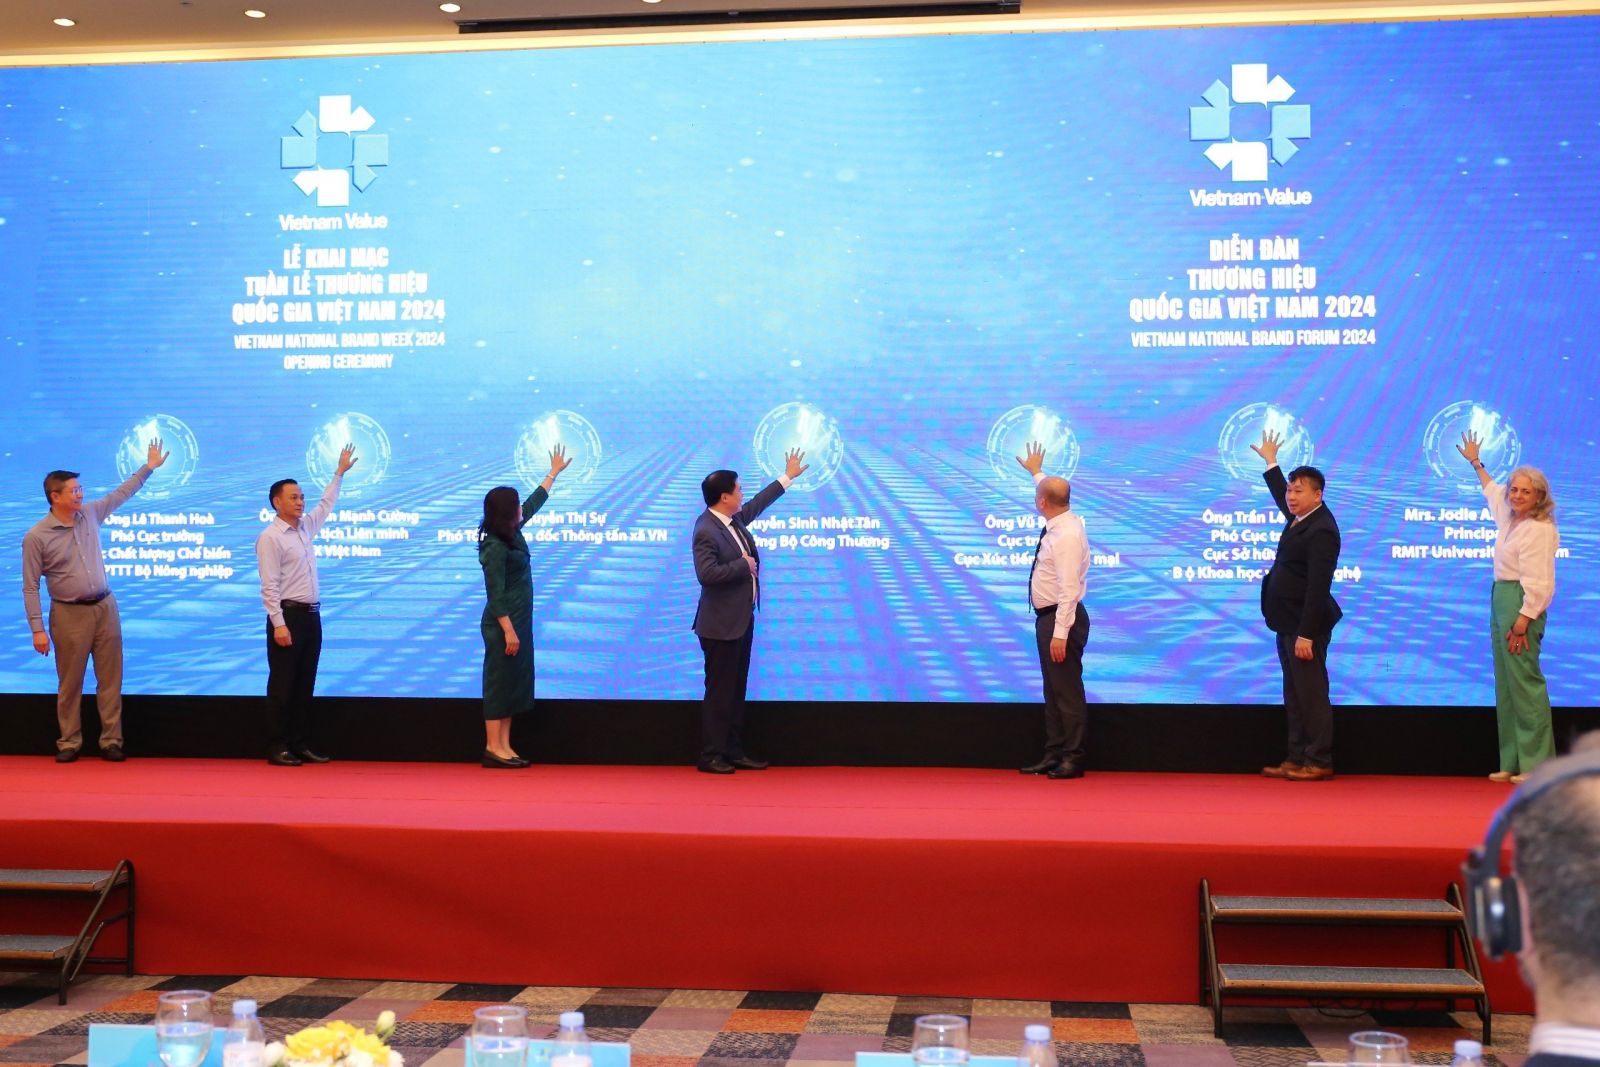 Opening of Vietnam National Brand Week 2024